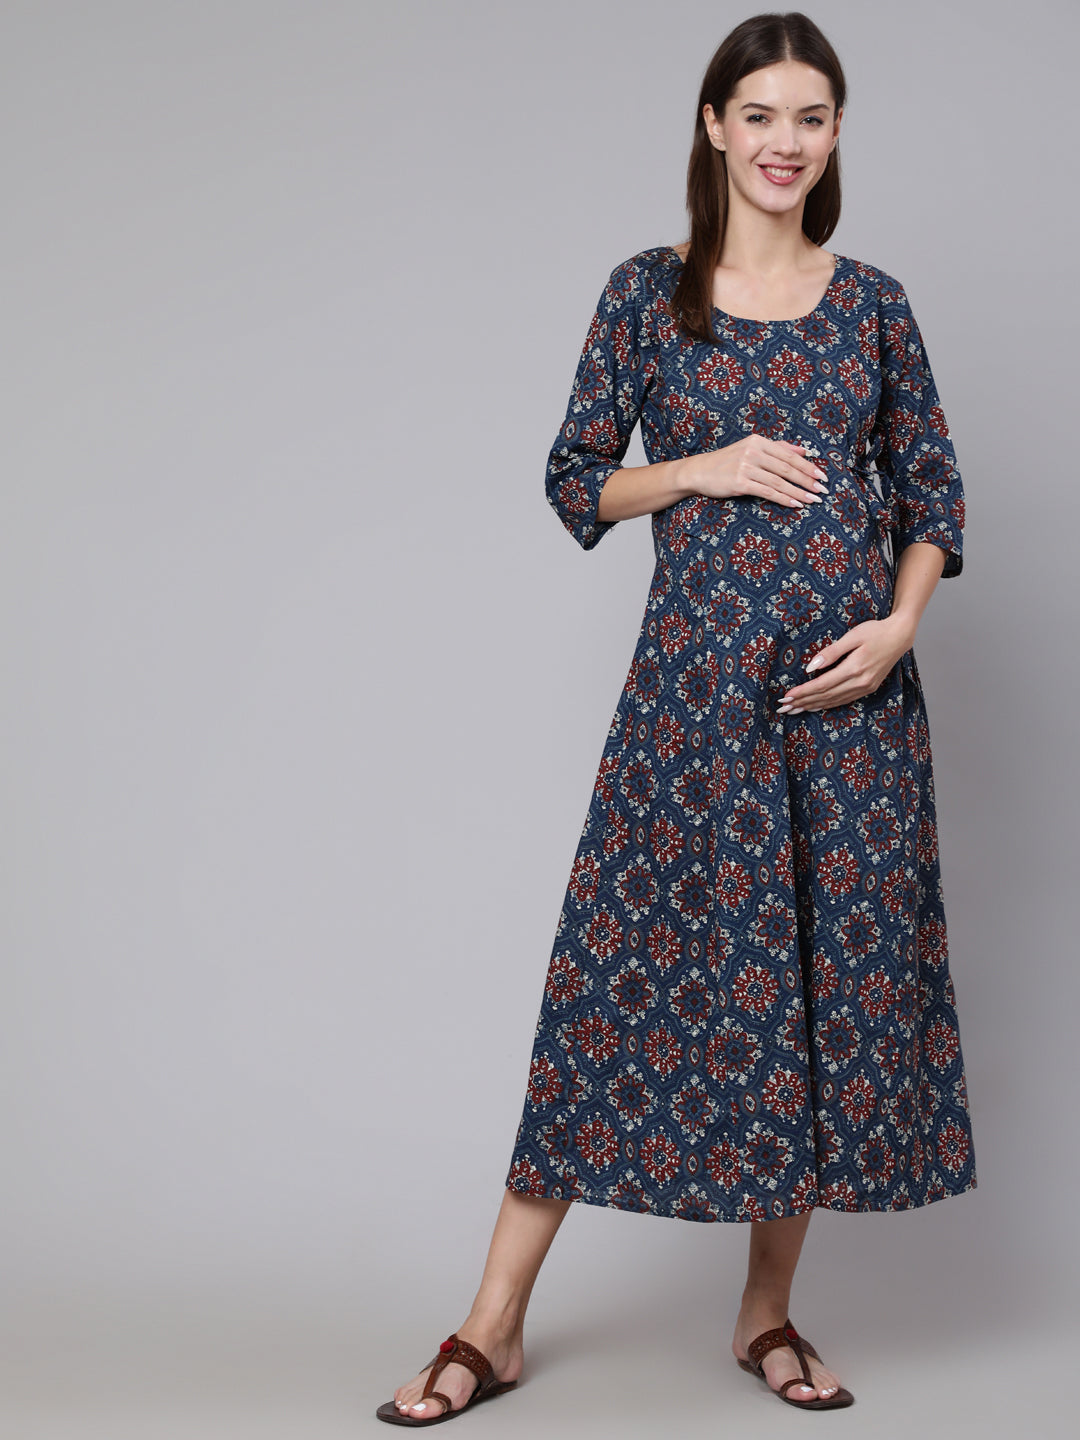 Women's Navy Blue Ethinc Printed Flared Maternity Dress - Nayo Clothing